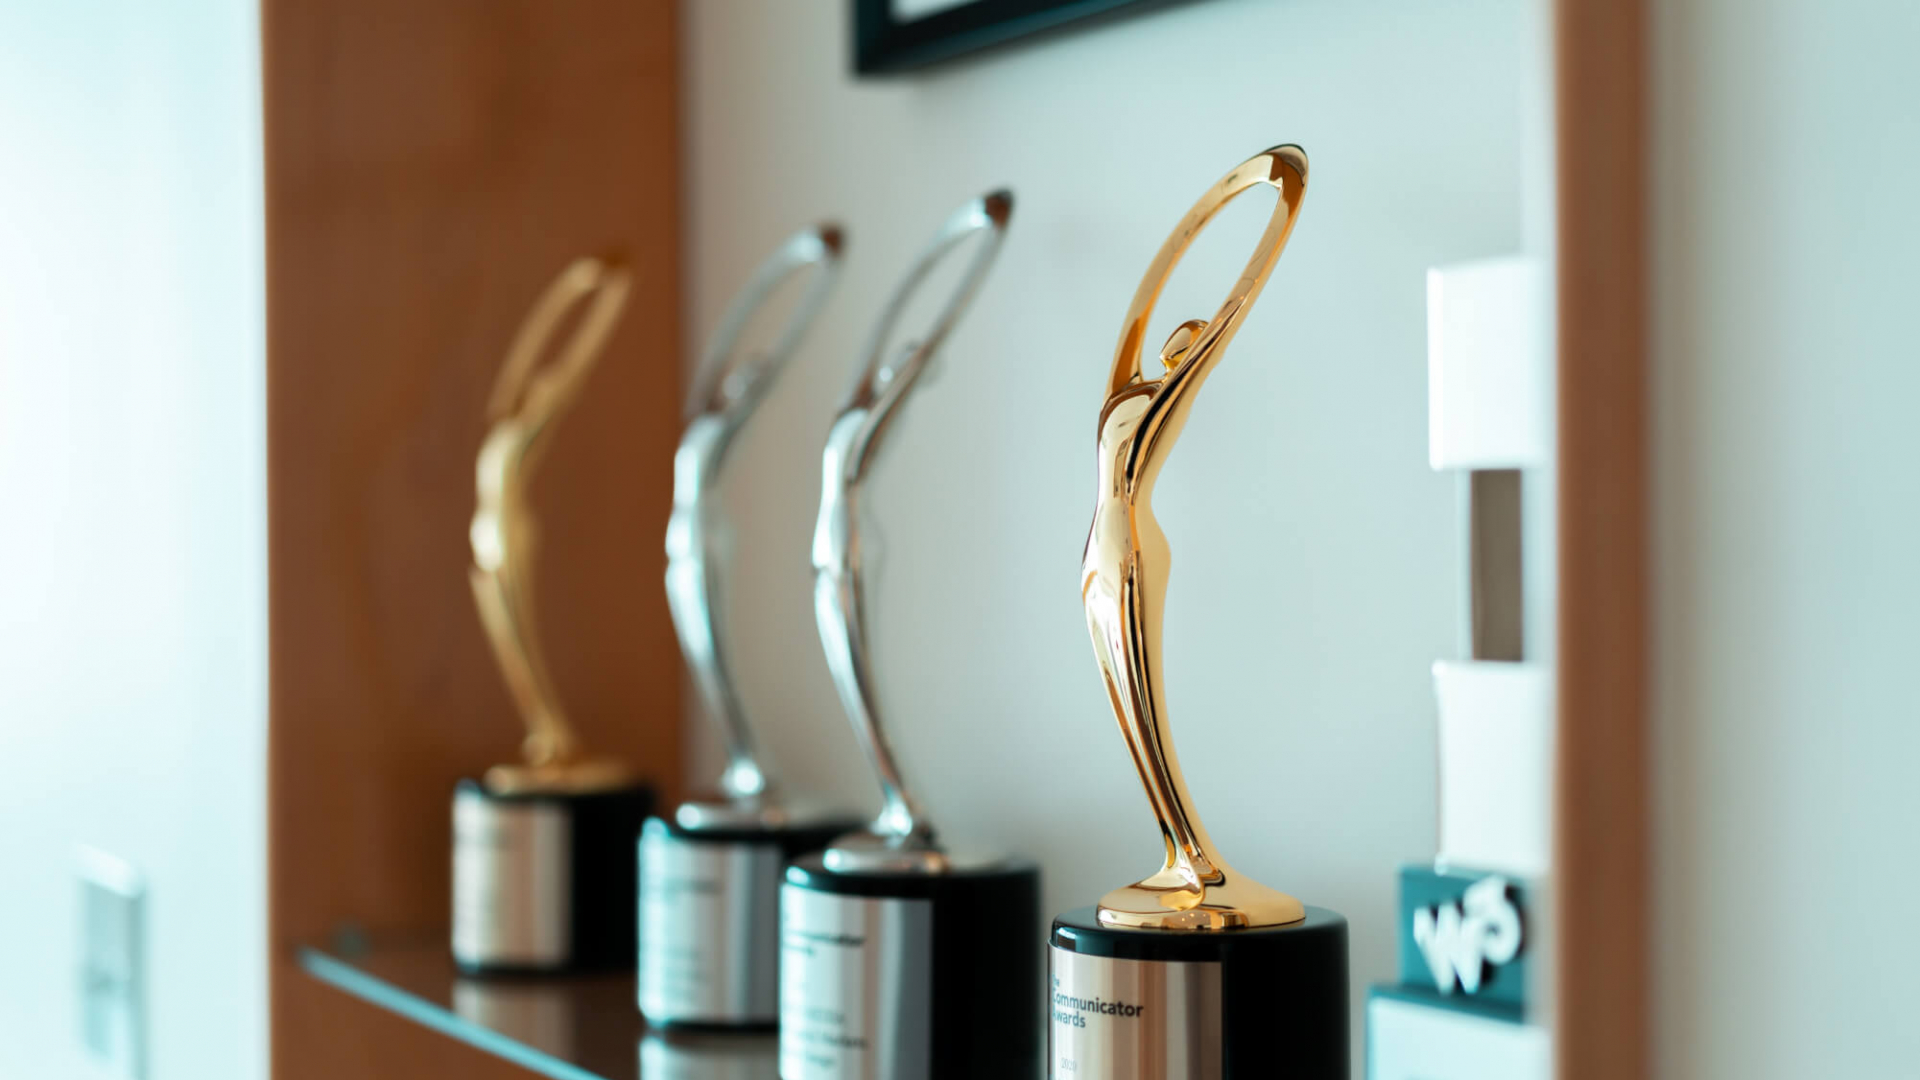 Pagano Media Award Winning Website Agency - Communicator Awards